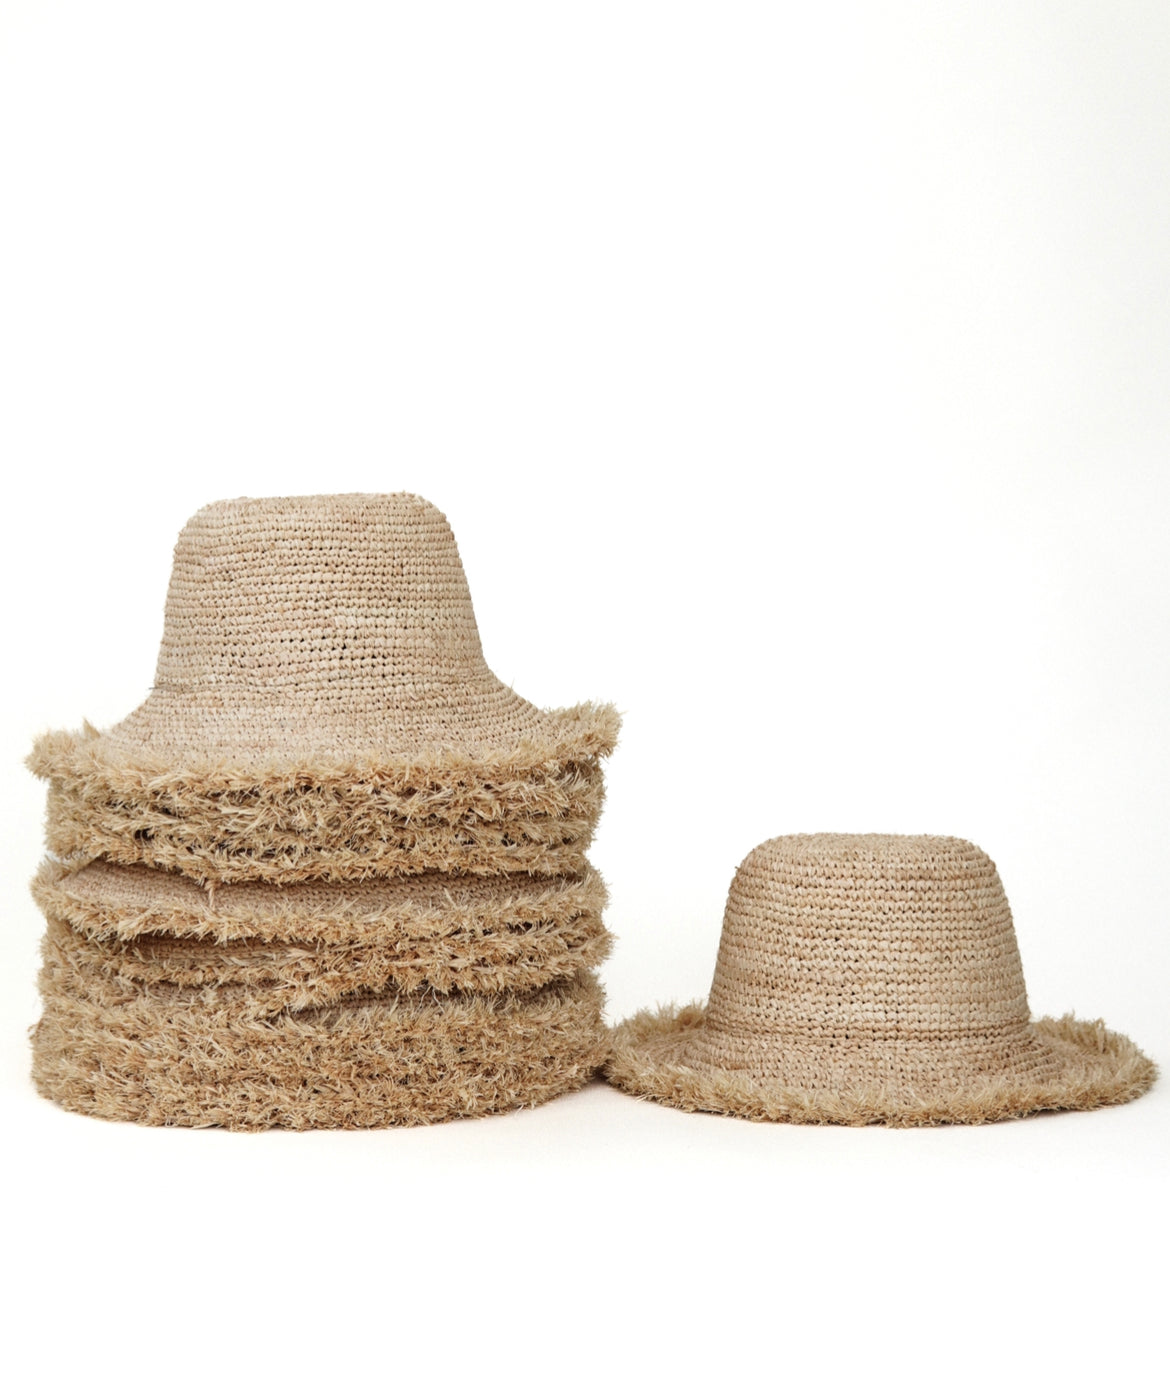 August- Raffia Bucket Hat